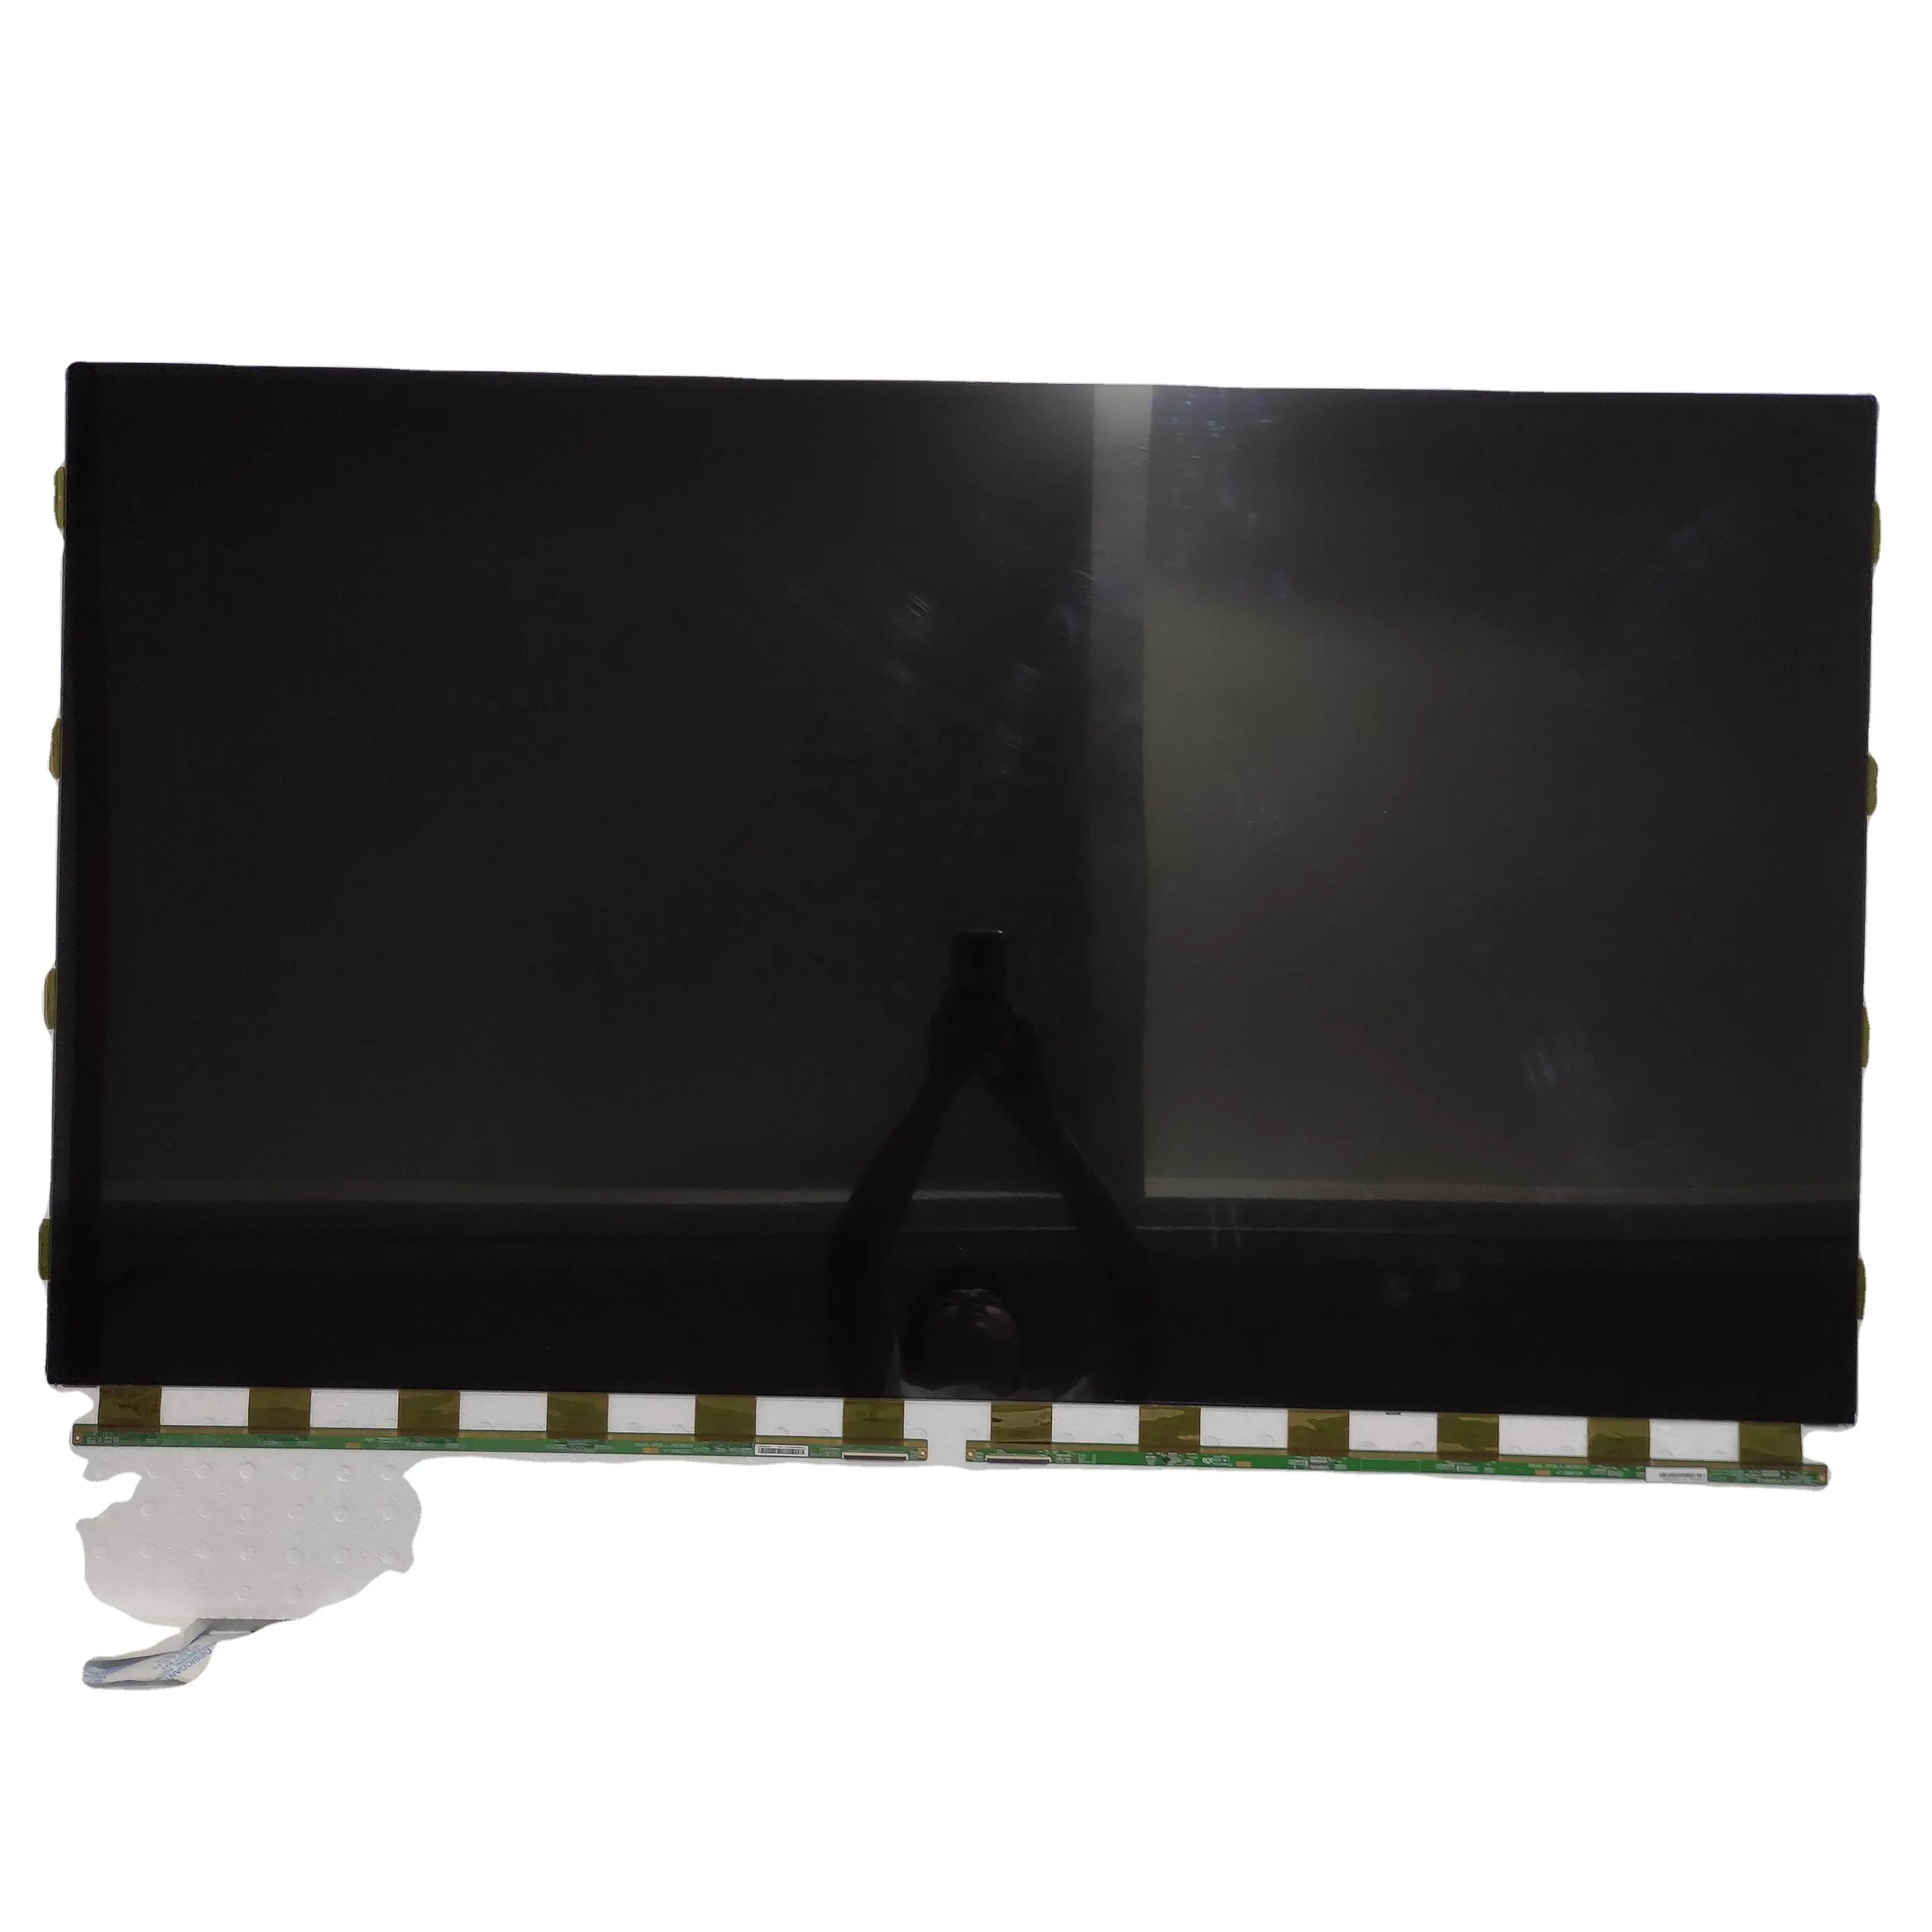 PANEL de TV LCD para BOE TV, reemplazo de tv LCD de 55 pulgadas, HV550QUB-N81, venta al por mayor